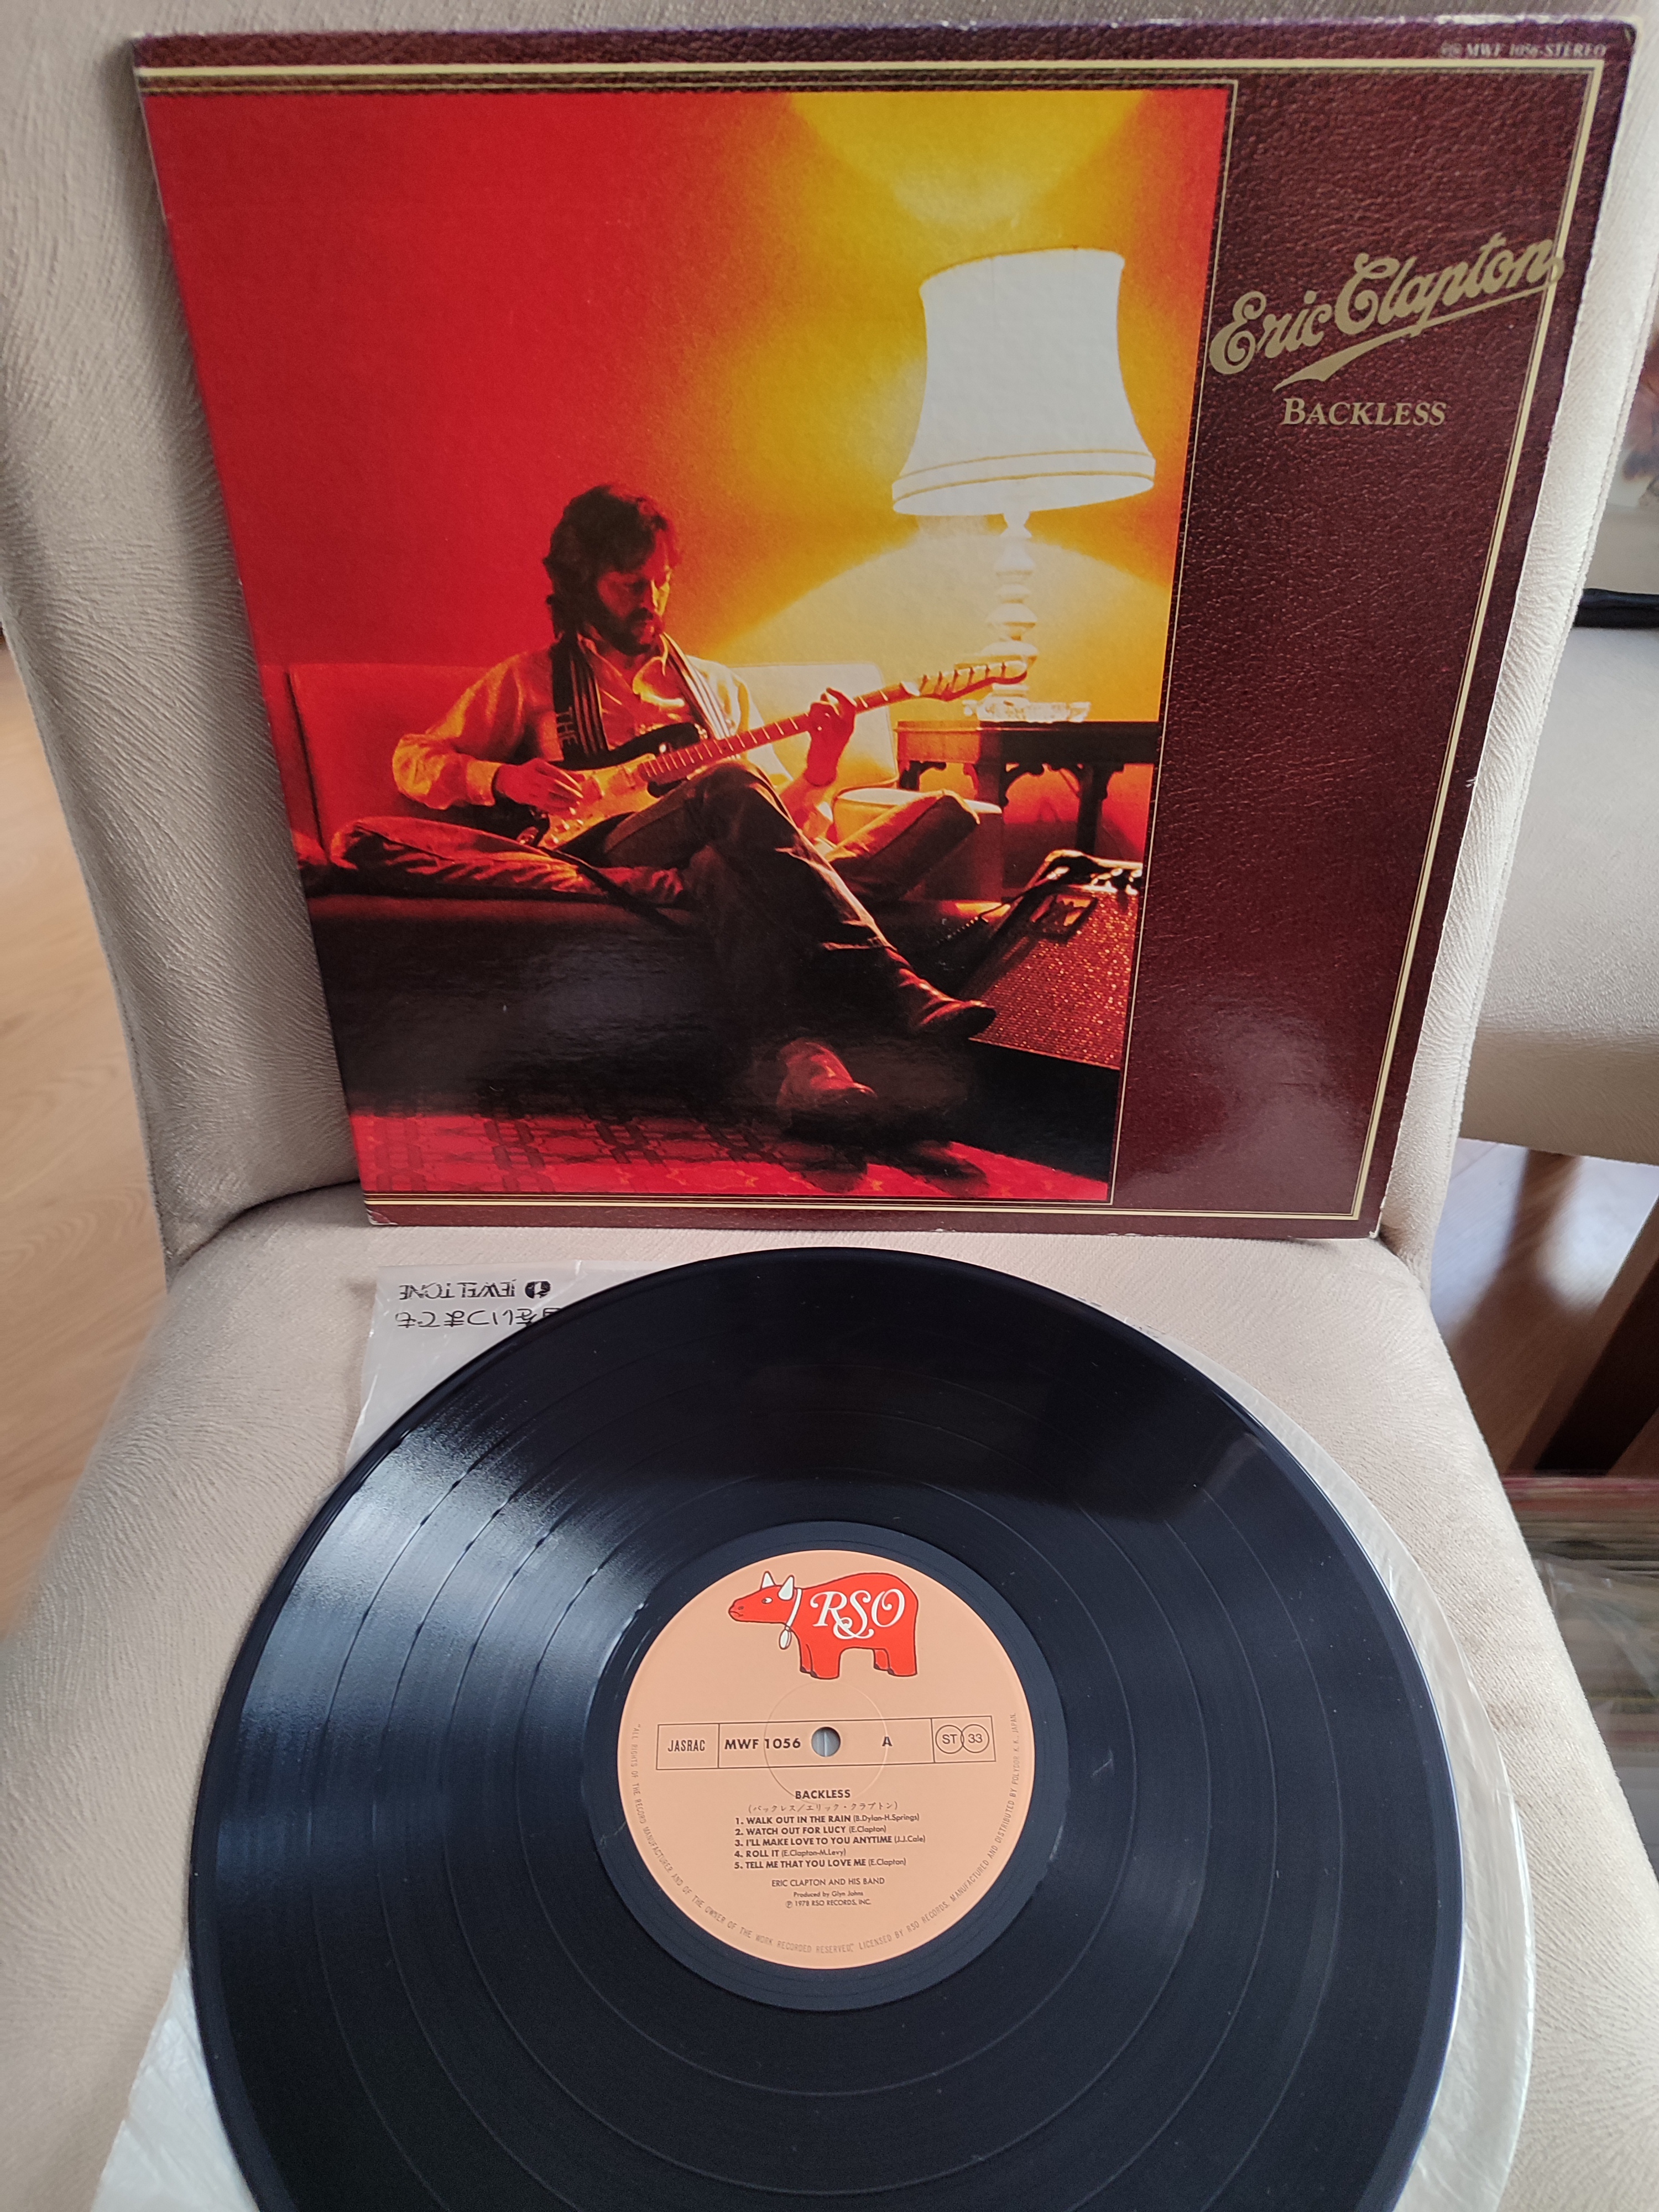 ERIC CLAPTON - Backless - 1978 Japonya Basım Albüm 33 lük LP Plak 2. EL